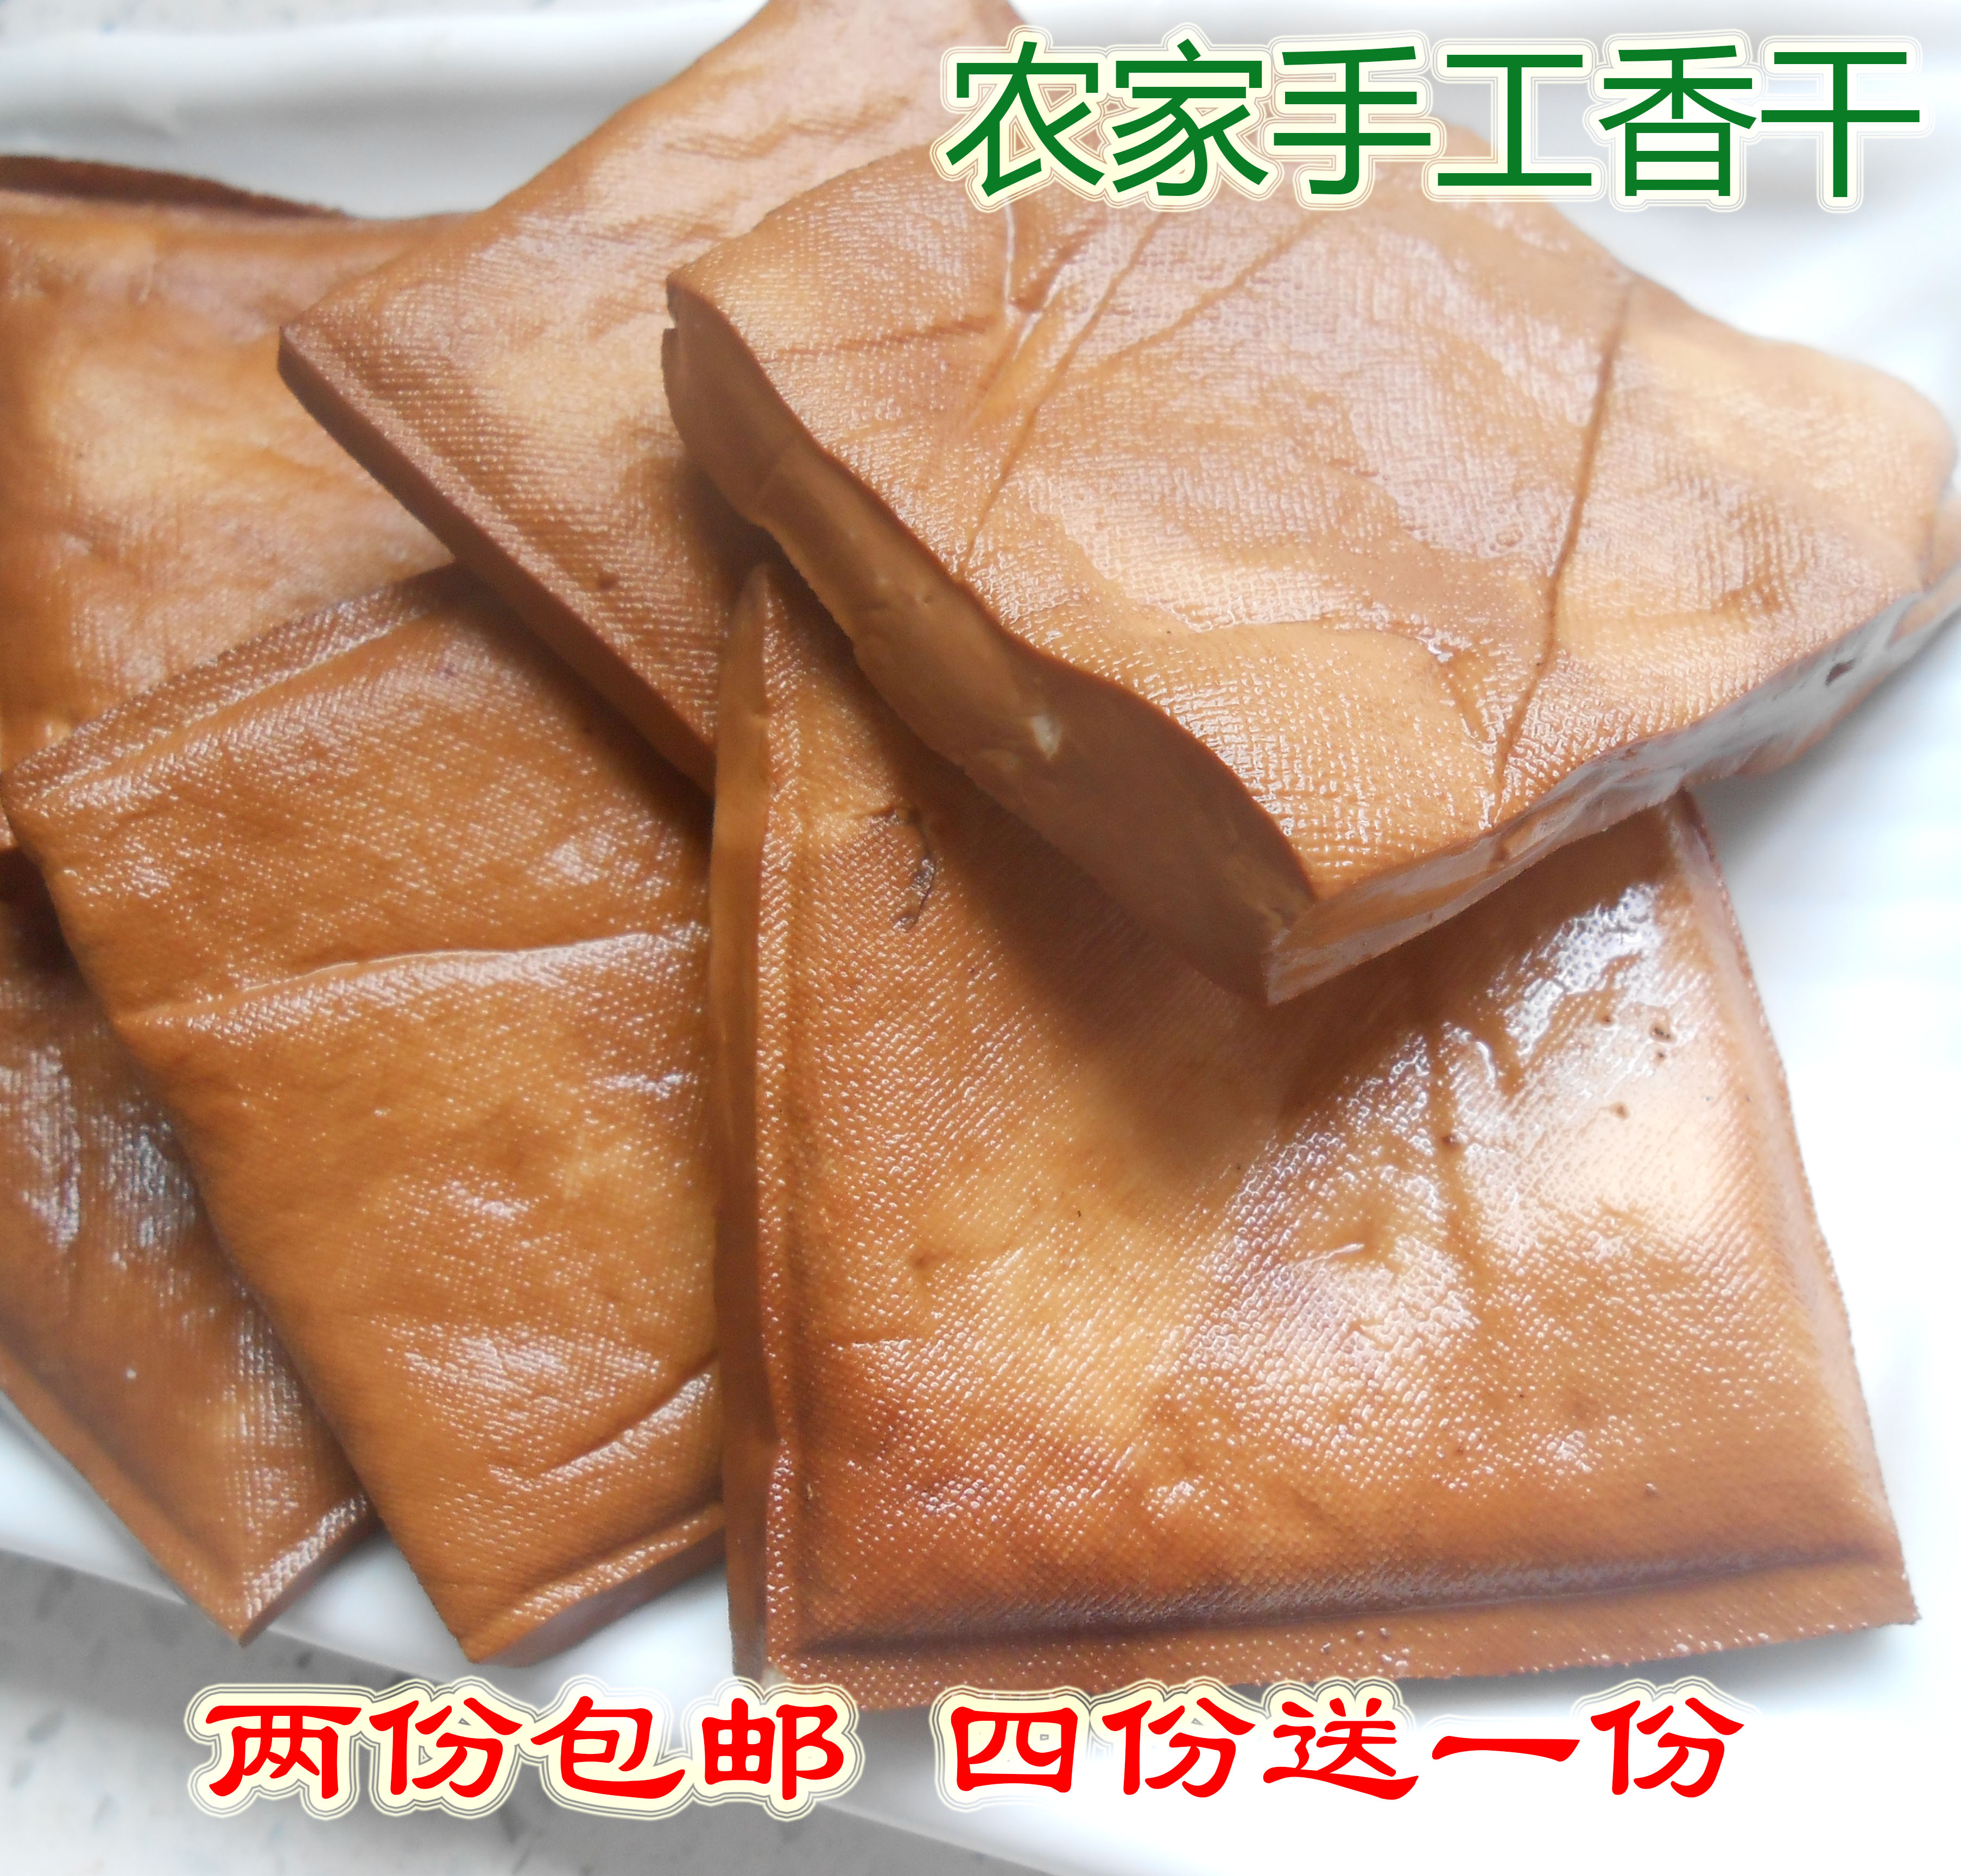 农家自制豆干香干子五香干豆腐干有机豆干可直接适用 10块/份